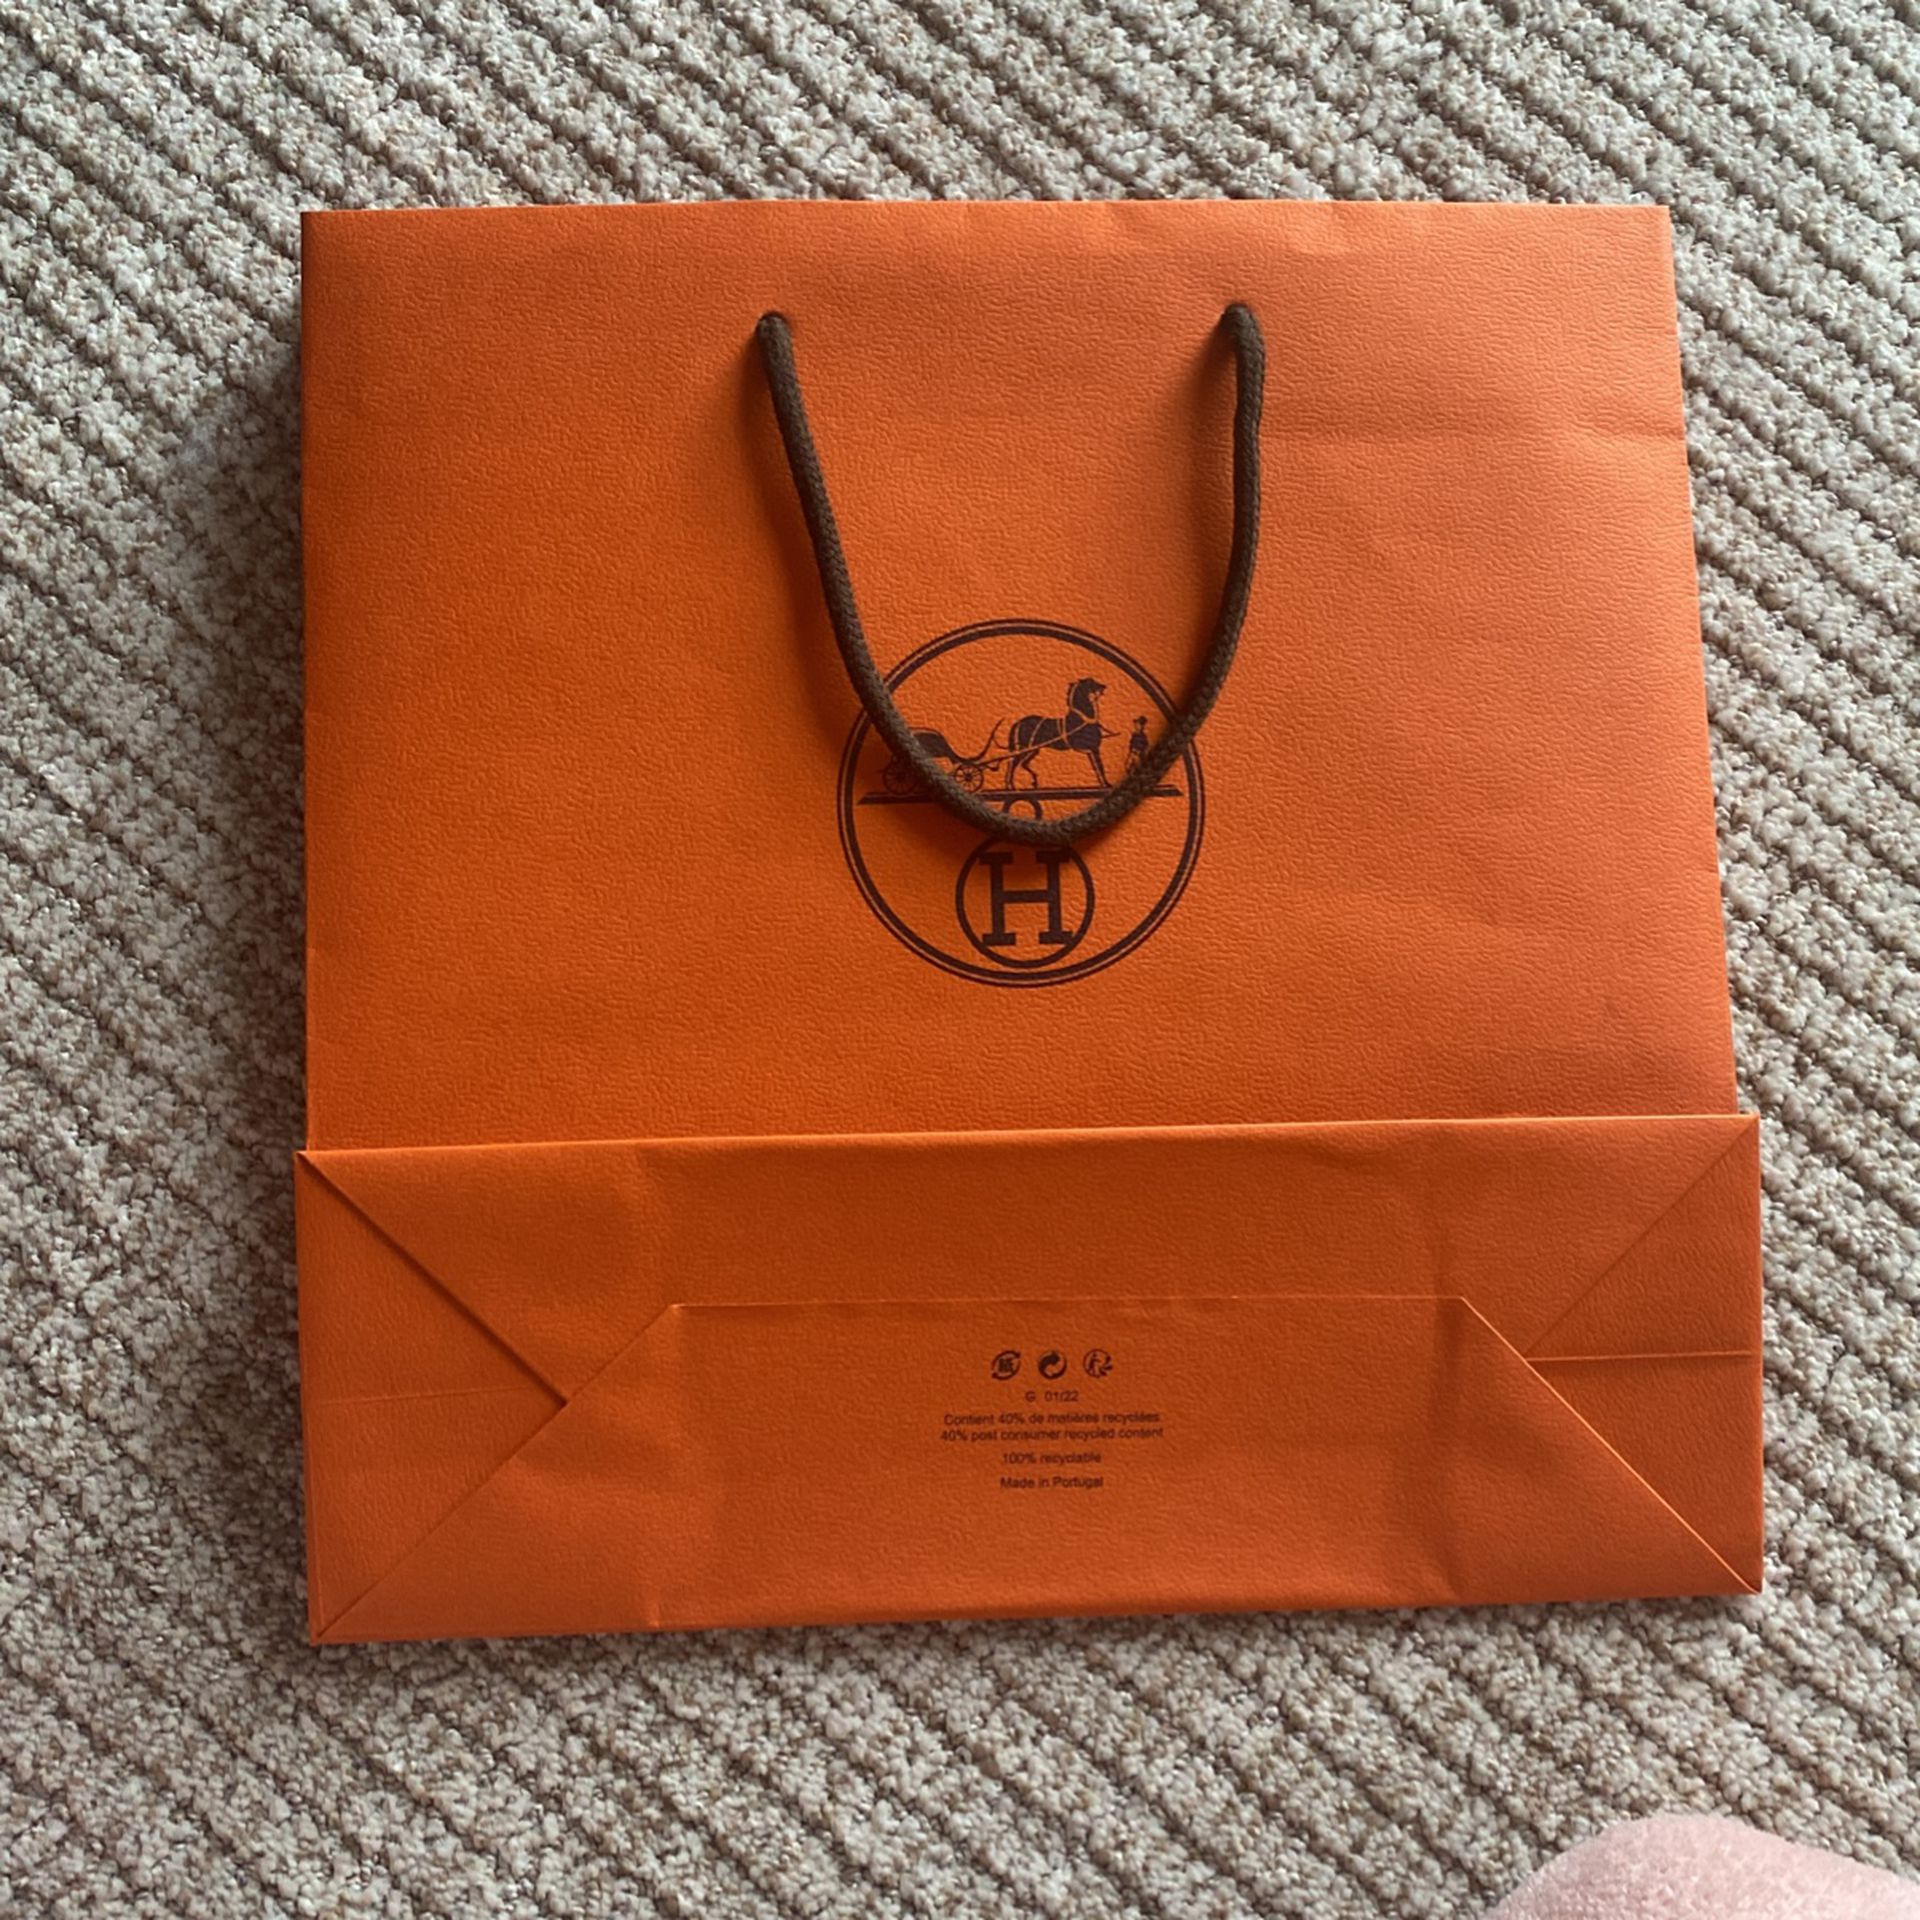 Hermes Shopping bag